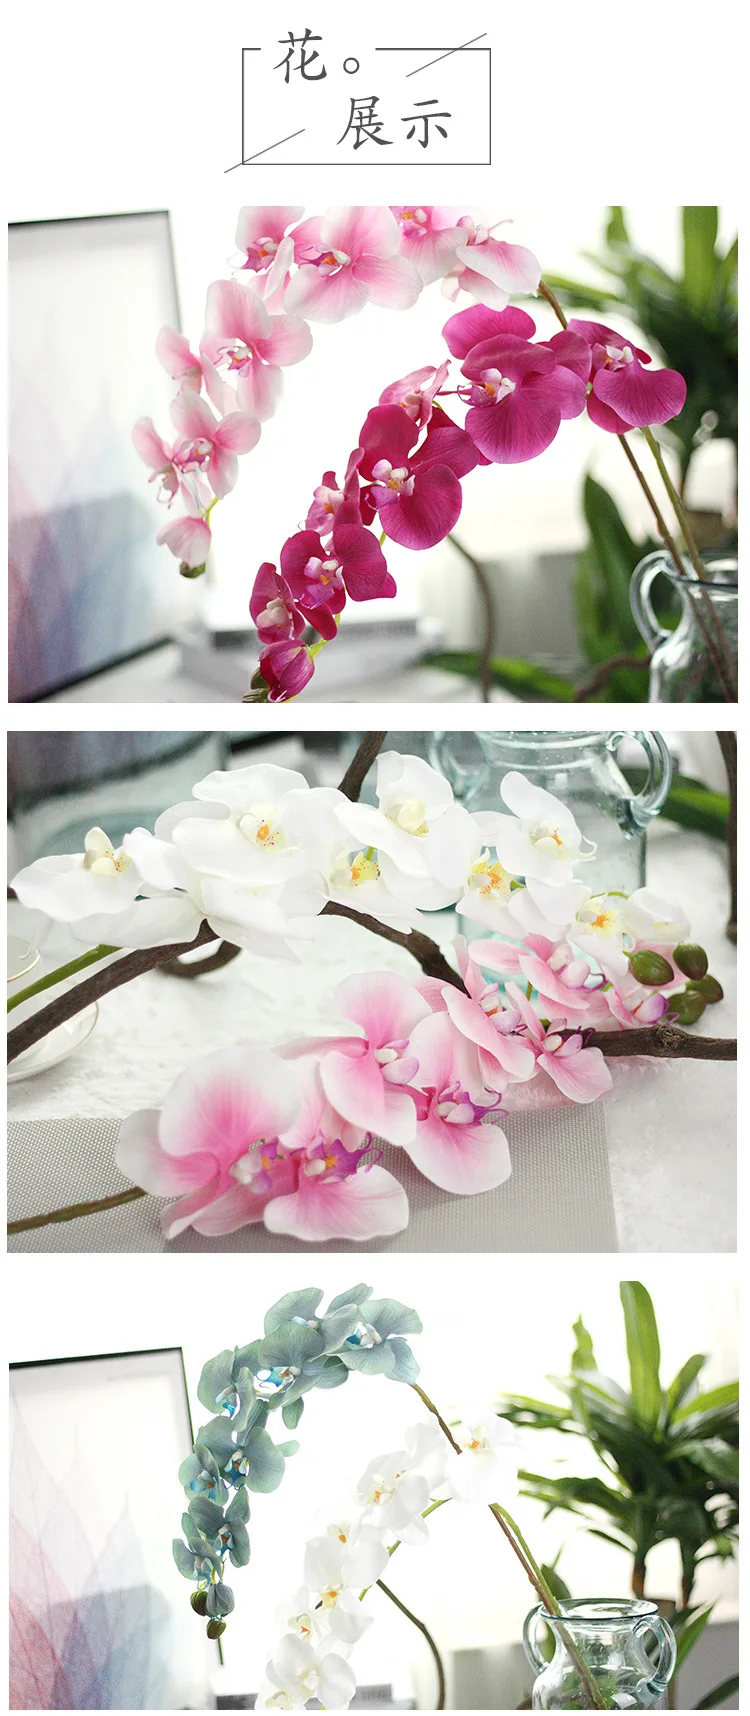 96 см настоящая искусственная Орхидея, Бабочка, цветок, ветка, свадьба, день рождения, вечеринки, товары для дома, сада, офиса, украшения